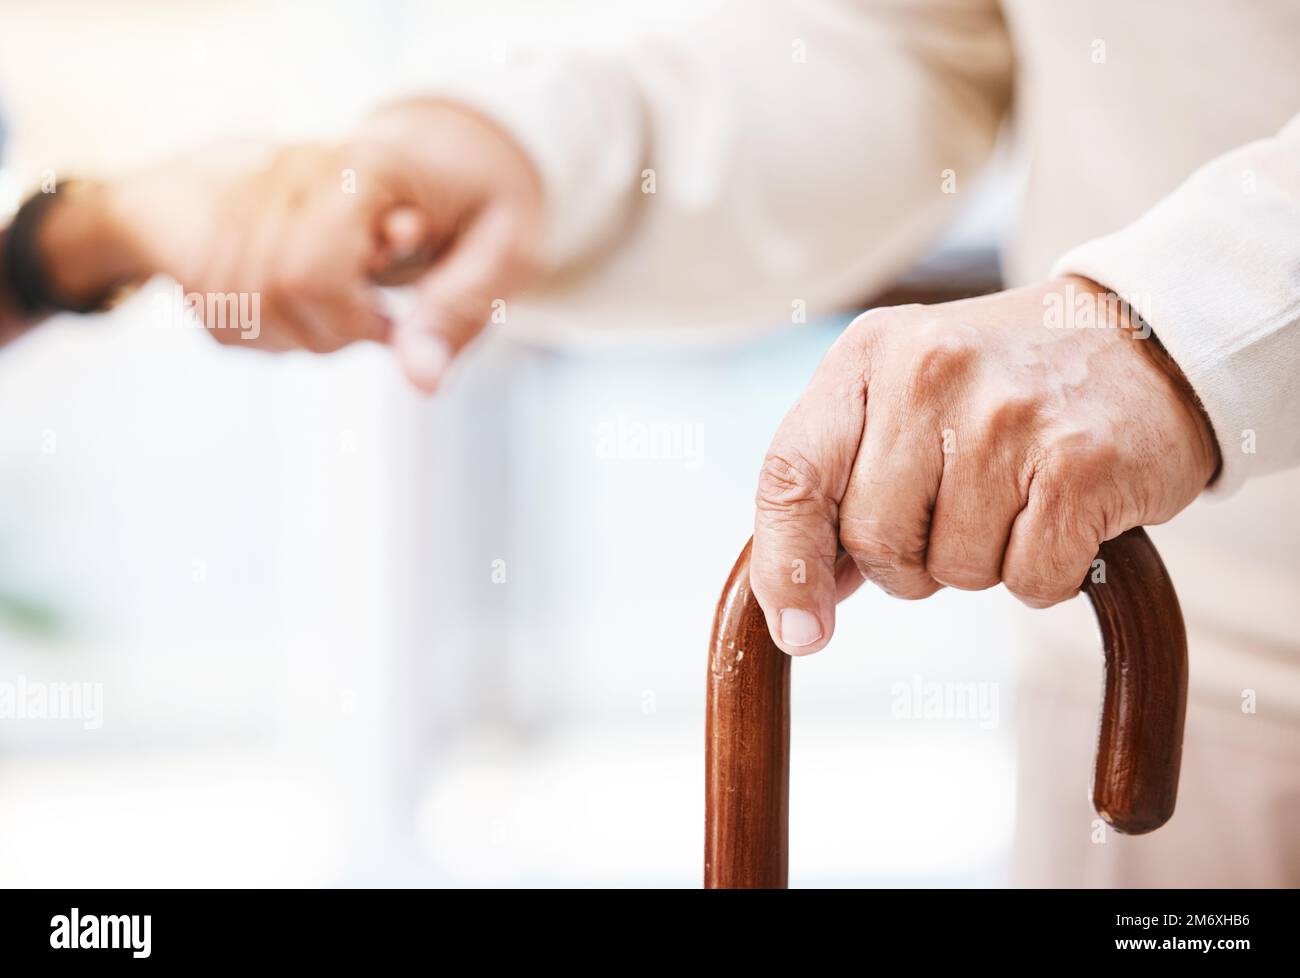 Gehstock, Seniorenhände und Schwesternhände für Hilfe, Unterstützung und Therapie bei Behinderung, parkinson und Arthritis. Gehstock, Behinderter und Pflegekraft Stockfoto